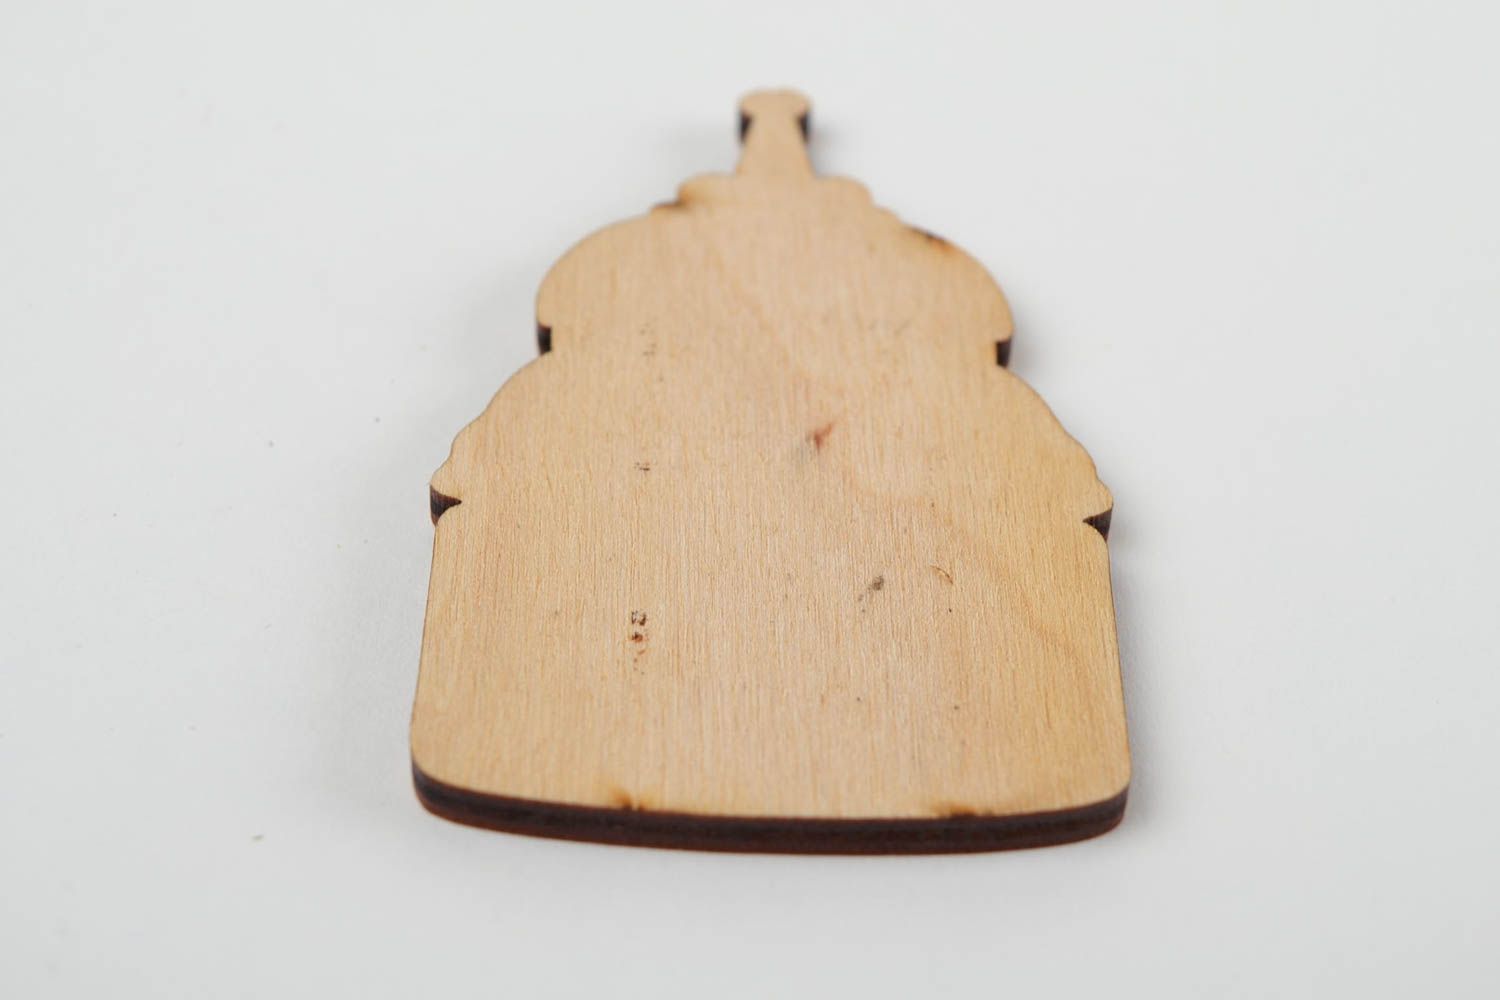 Holz Figur handgemacht Rohling zum Bemalen ungewöhnlich Miniatur bemalen schön foto 5